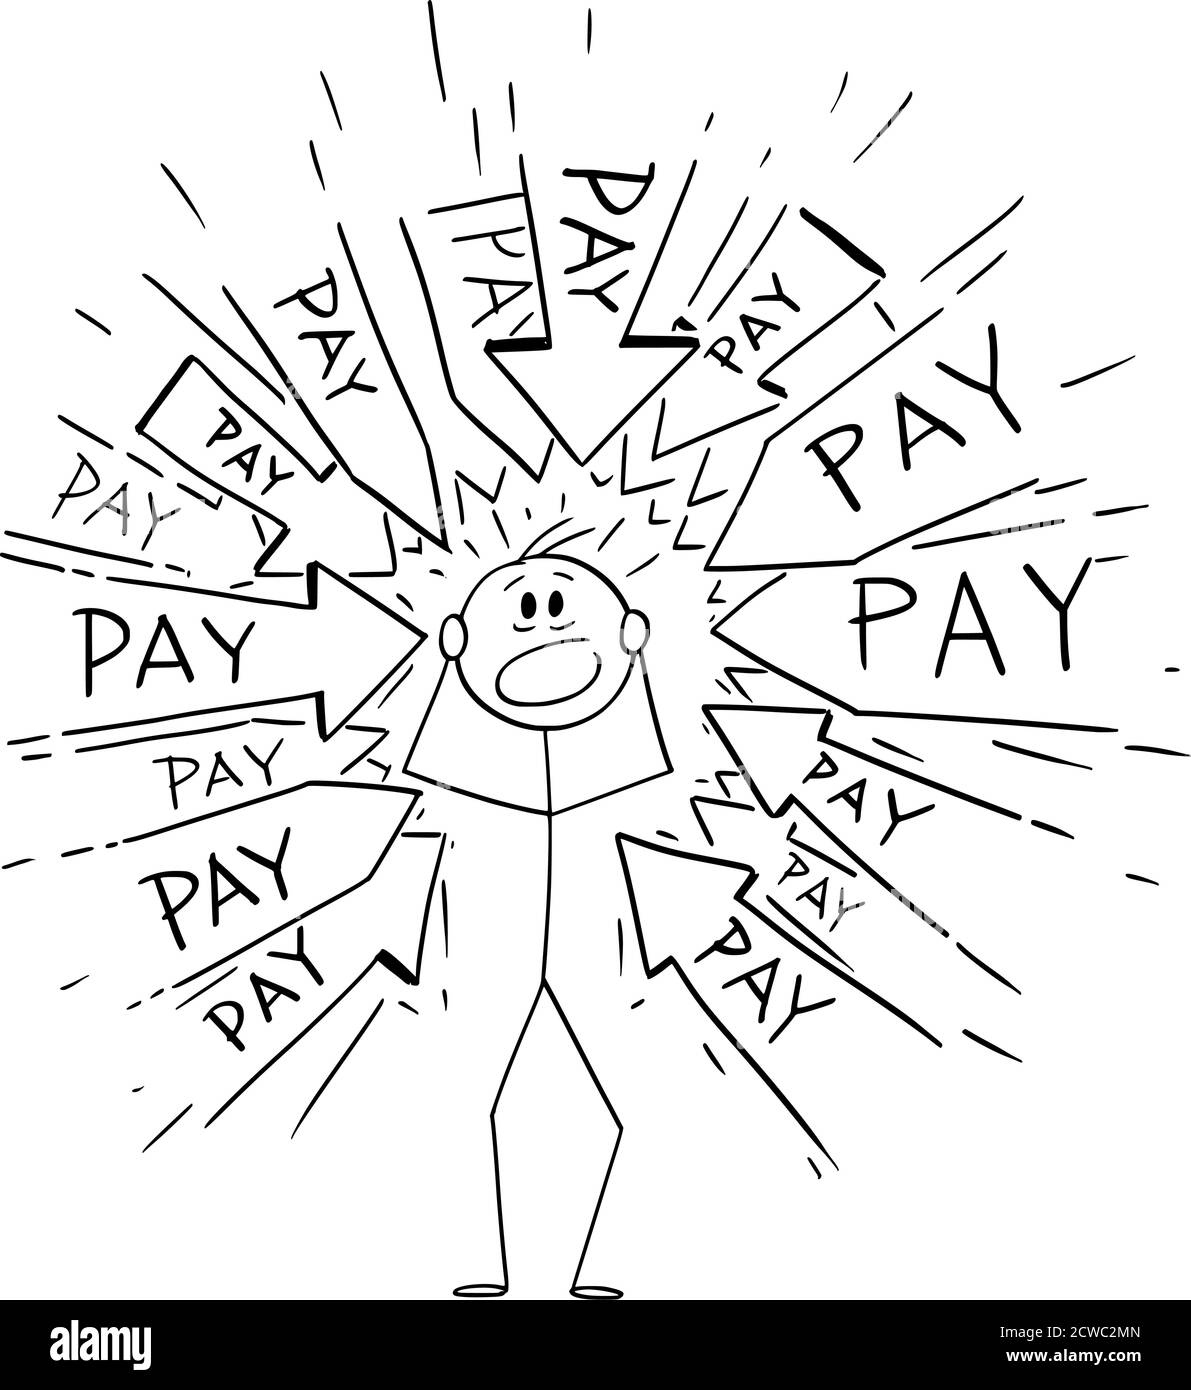 Grafico del cartoon vettoriale disegno illustrazione concettuale dell'uomo stressato con molte frecce che lo indicano chiedendo di pagare i soldi. Concetto finanziario di spese, bilancio e reddito. Illustrazione Vettoriale